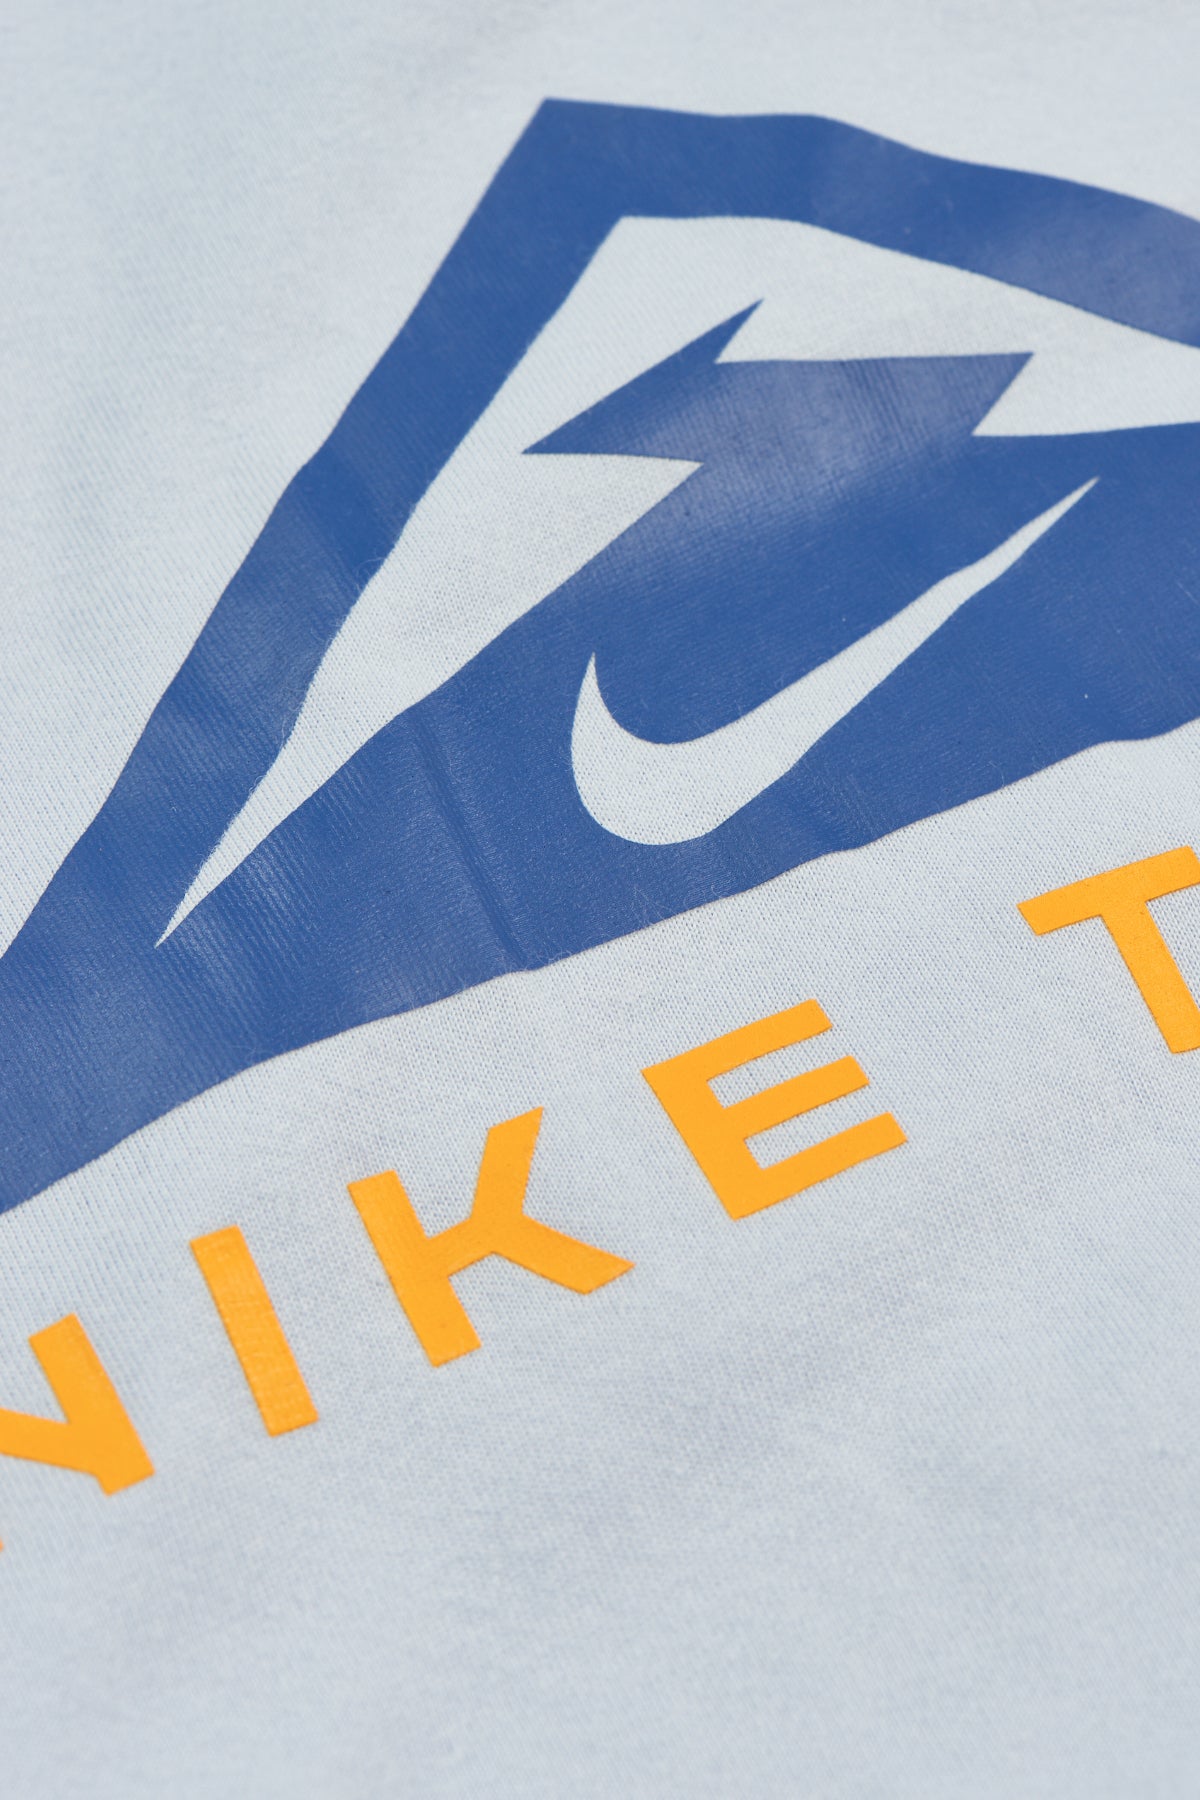 NIKE TRAIL - Nike Dri-FIT TEE